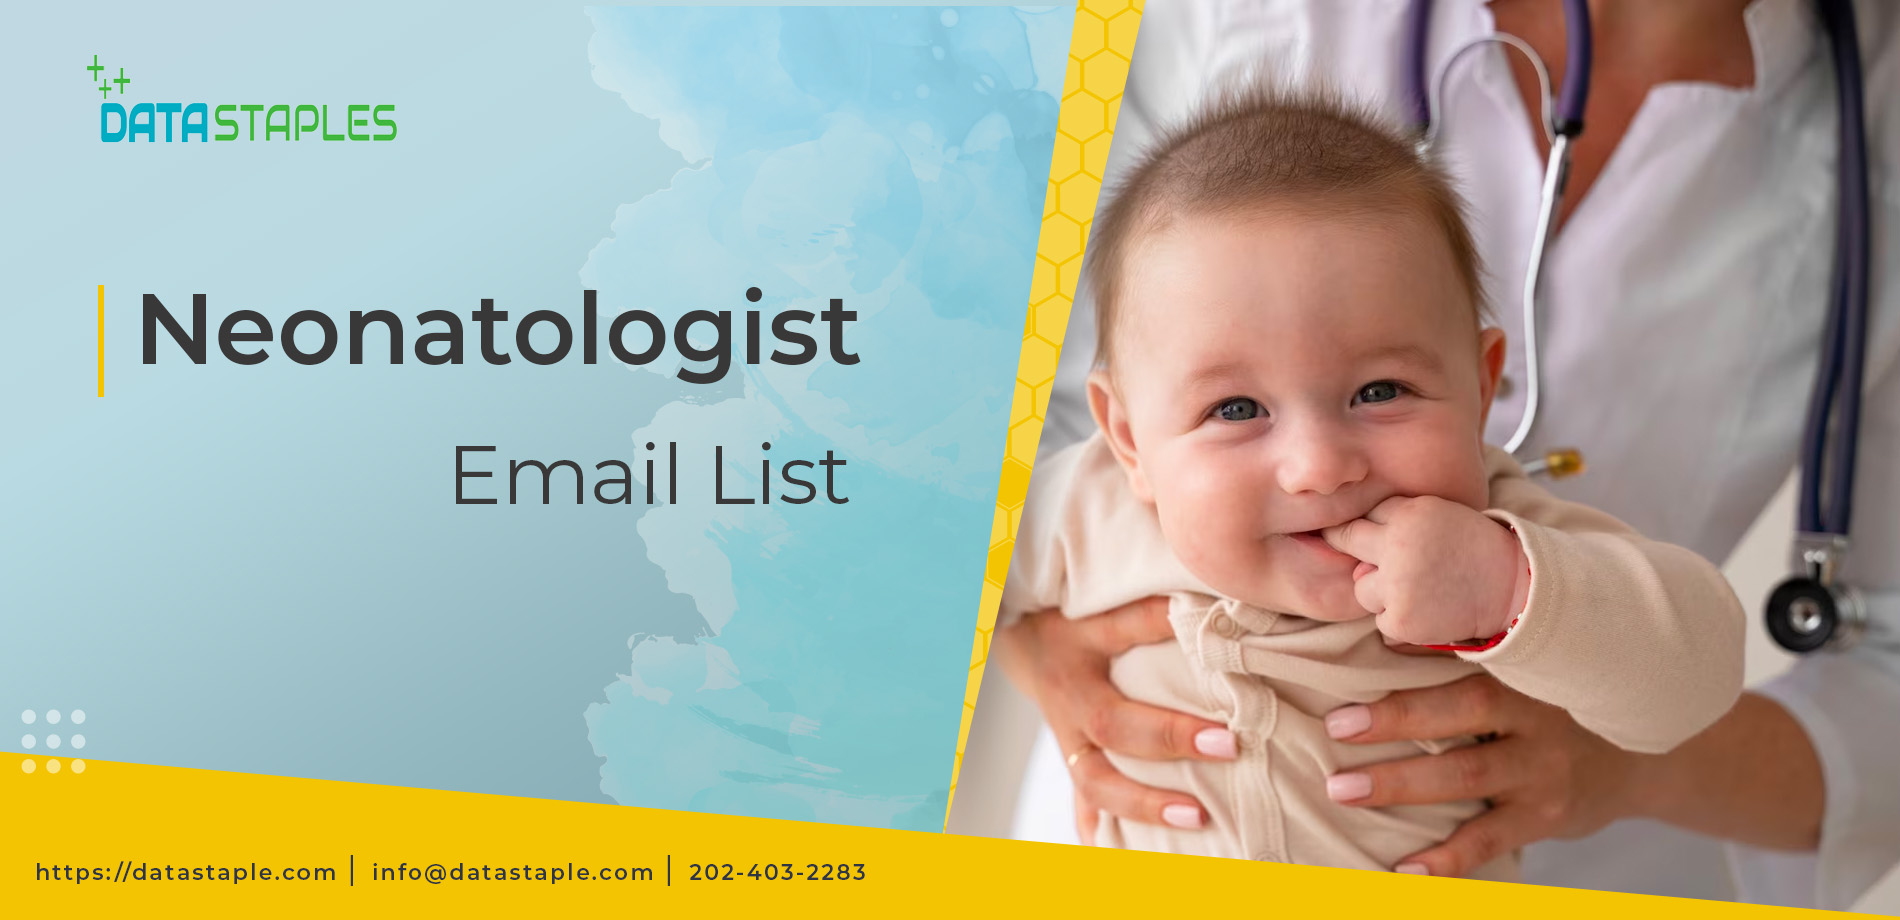 Neonatologist Email List | DataStaples